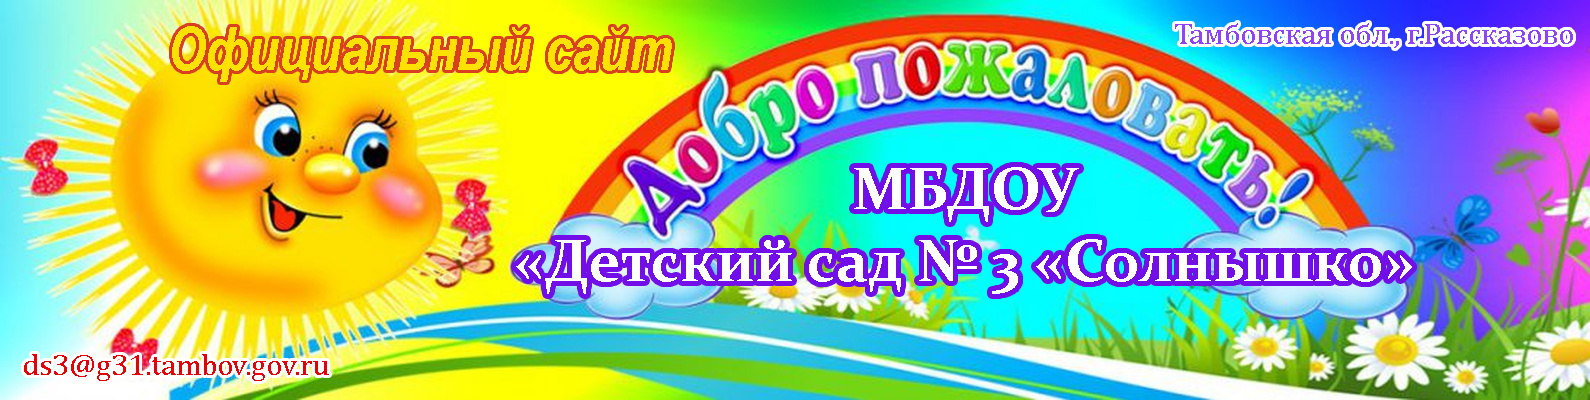 Официальный сайт МБДОУ "Детский сад № 3 "Солнышко"